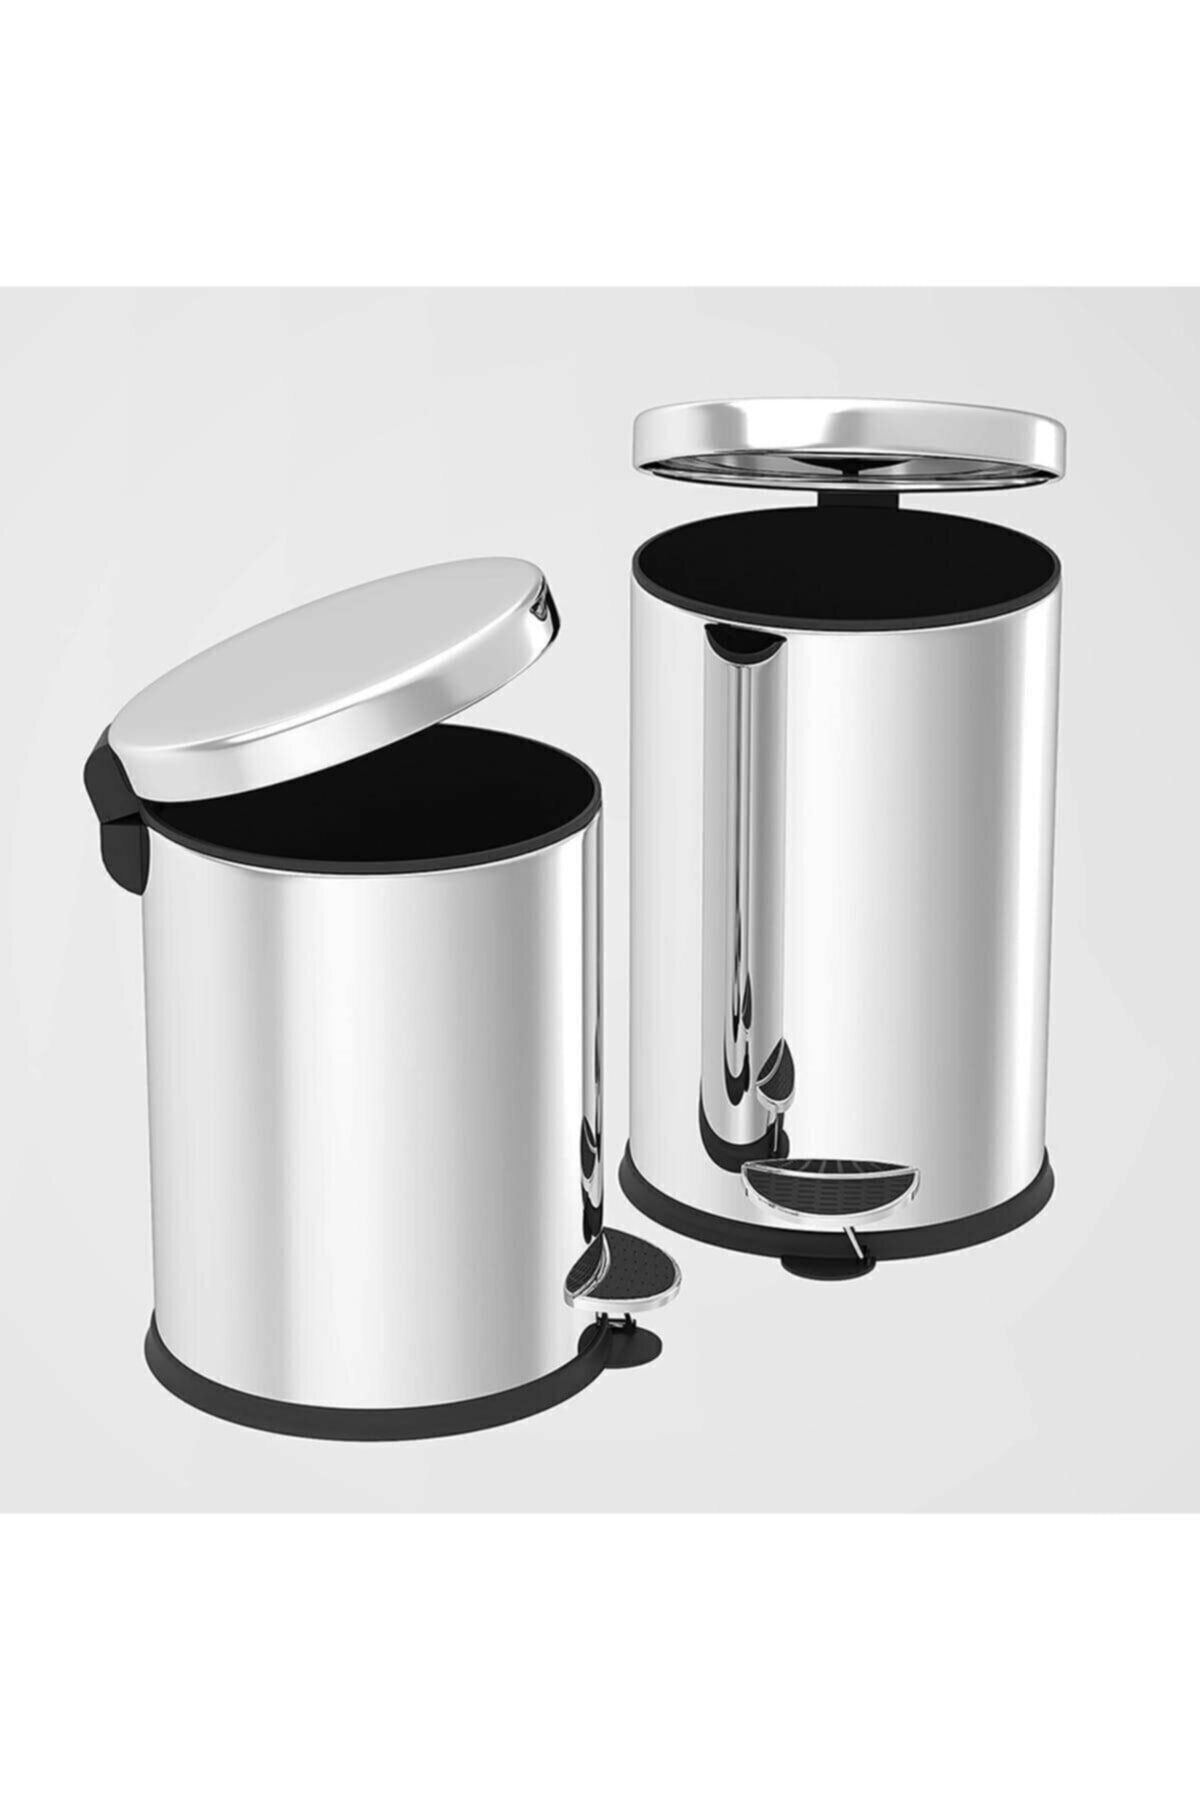 nevhas Çöp Kovası 3 Litre Paslanmaz Çelikli Pedallı Çöp Kutusu Tuvalet Banyo Mutfak